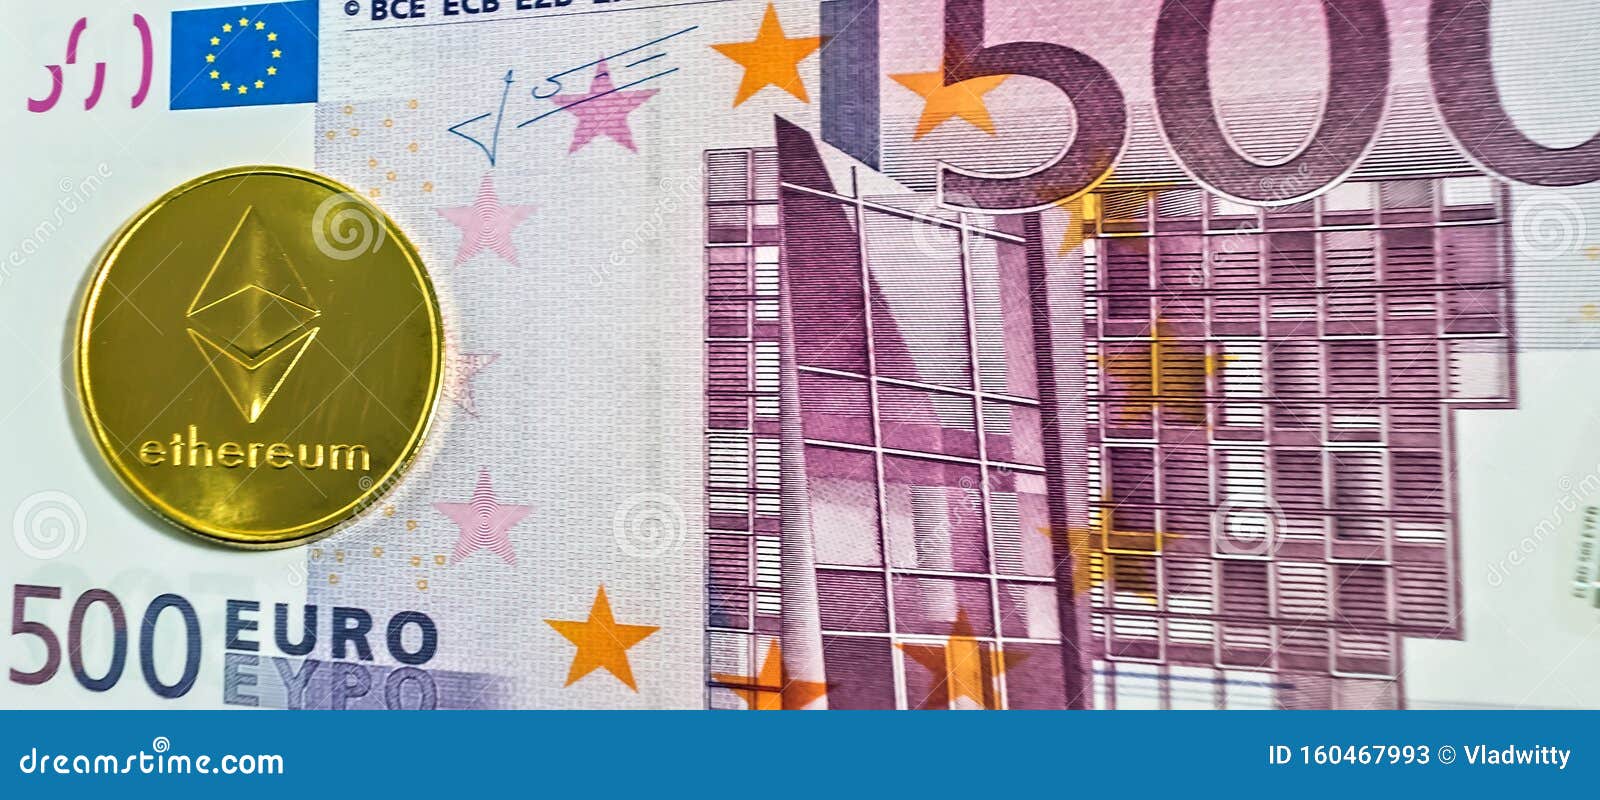 Convert EUR to BTC - Euro to Bitcoin Converter | CoinCodex